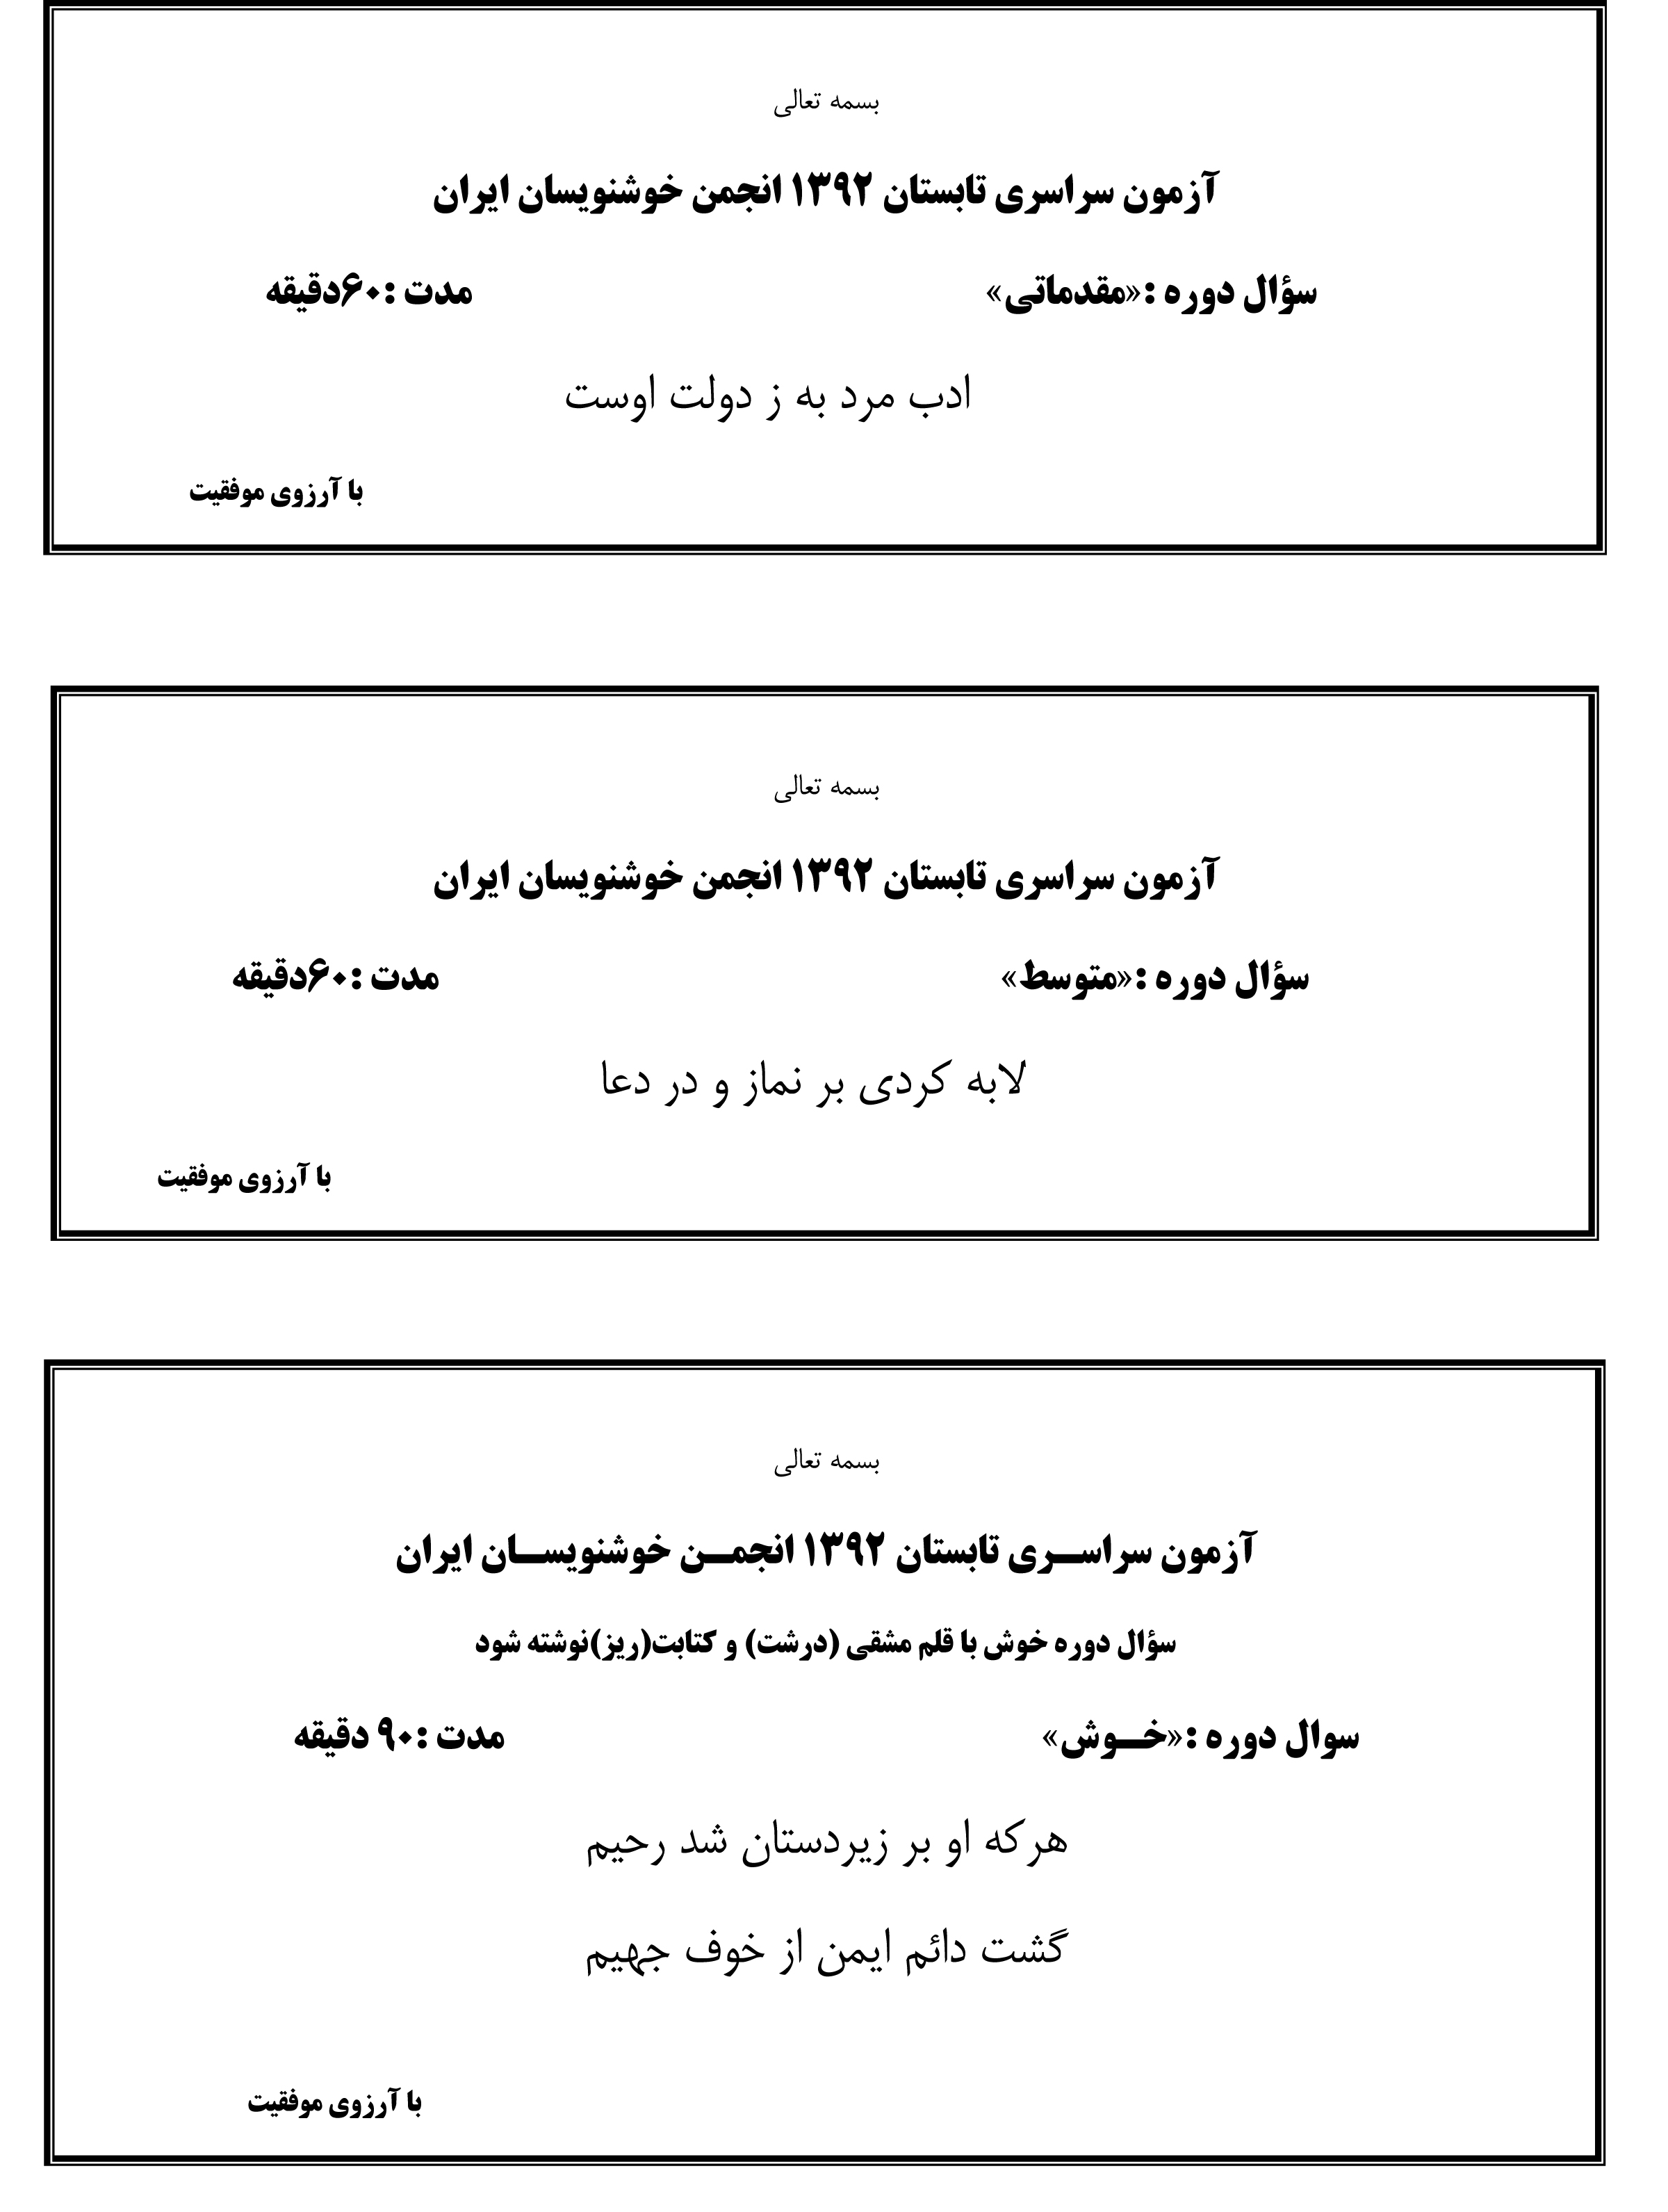 سوالات تابستان 92 انجمن خوشنویسان ایران